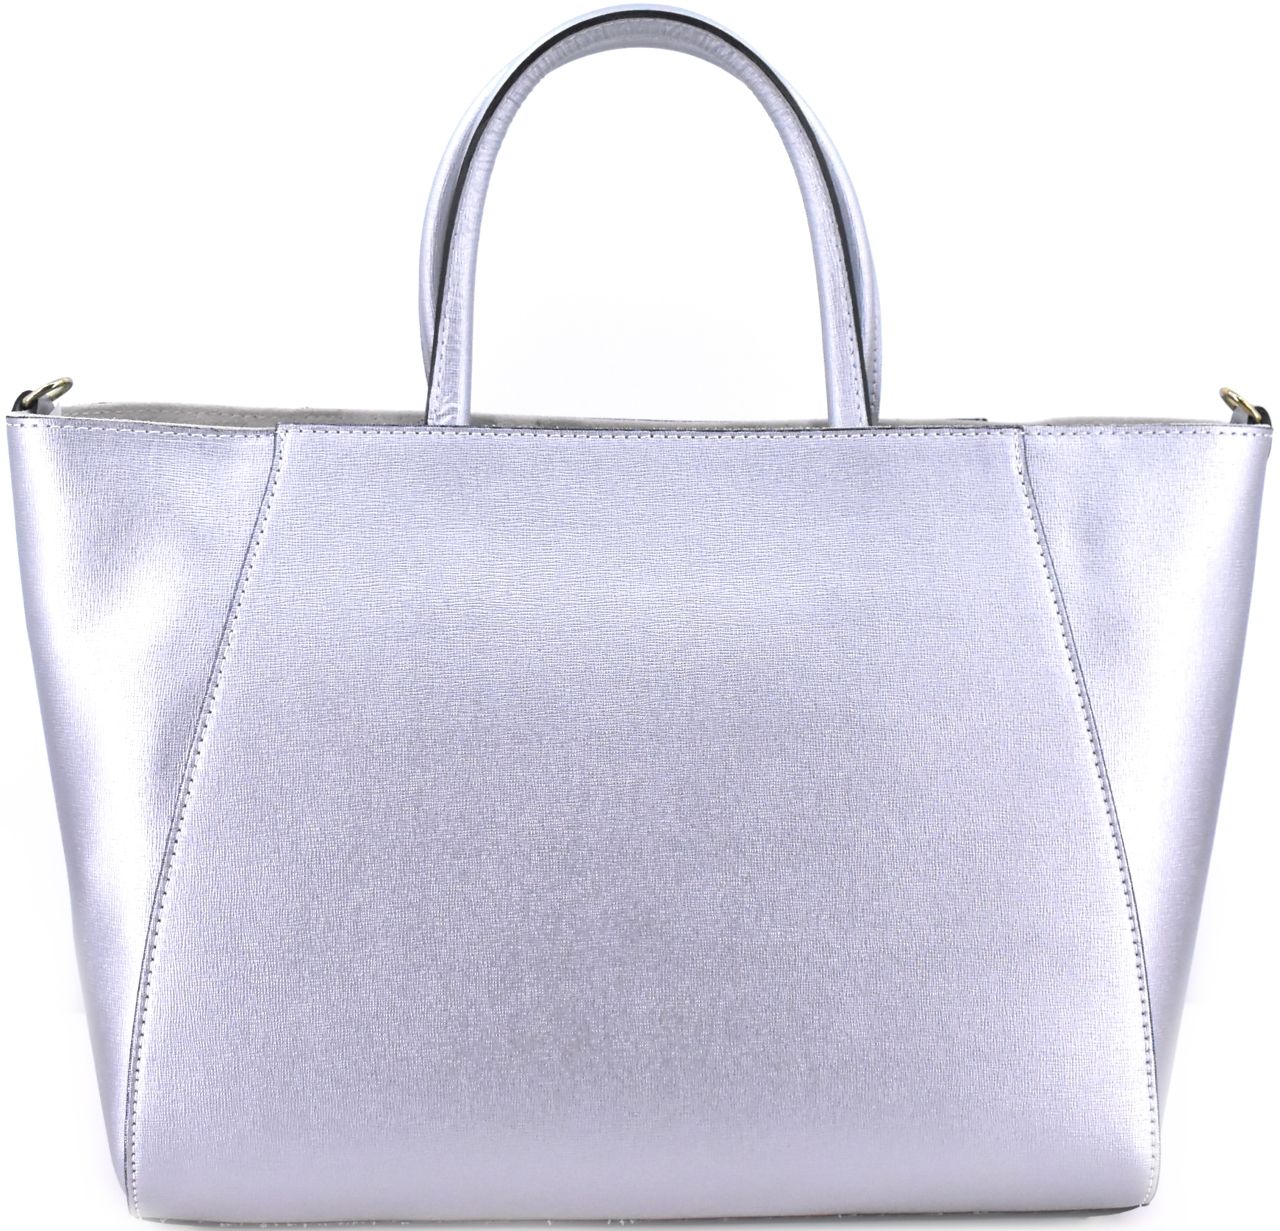 Moderní Shopper dámská kožená kabelka Arteddy - stříbrná 32454